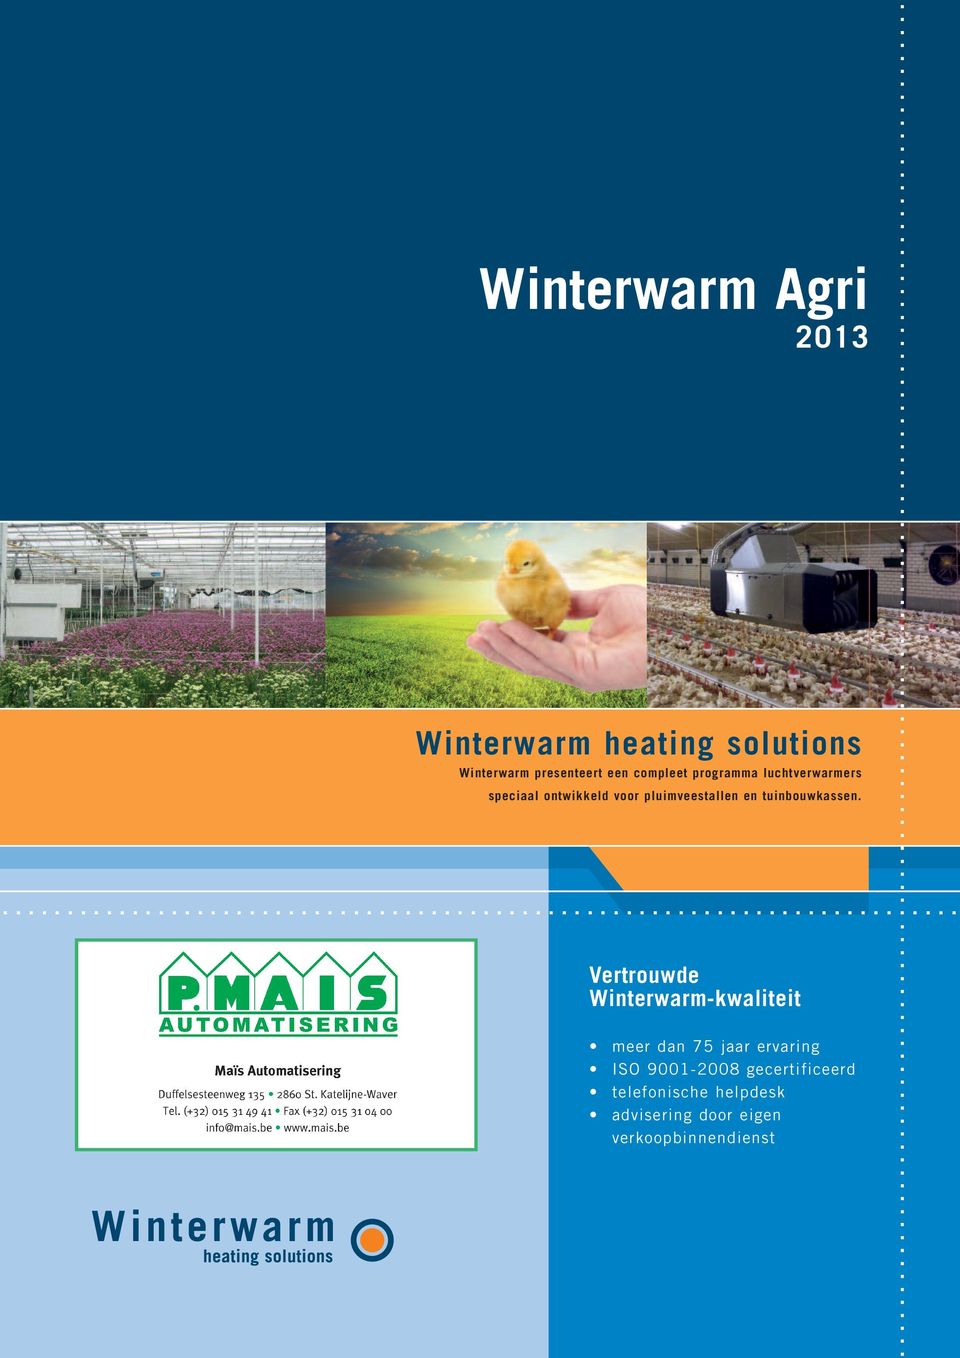 Vertrouwde Winterwarm-kwaliteit meer dan 75 jaar ervaring ISO 9001-2008 gecertificeerd